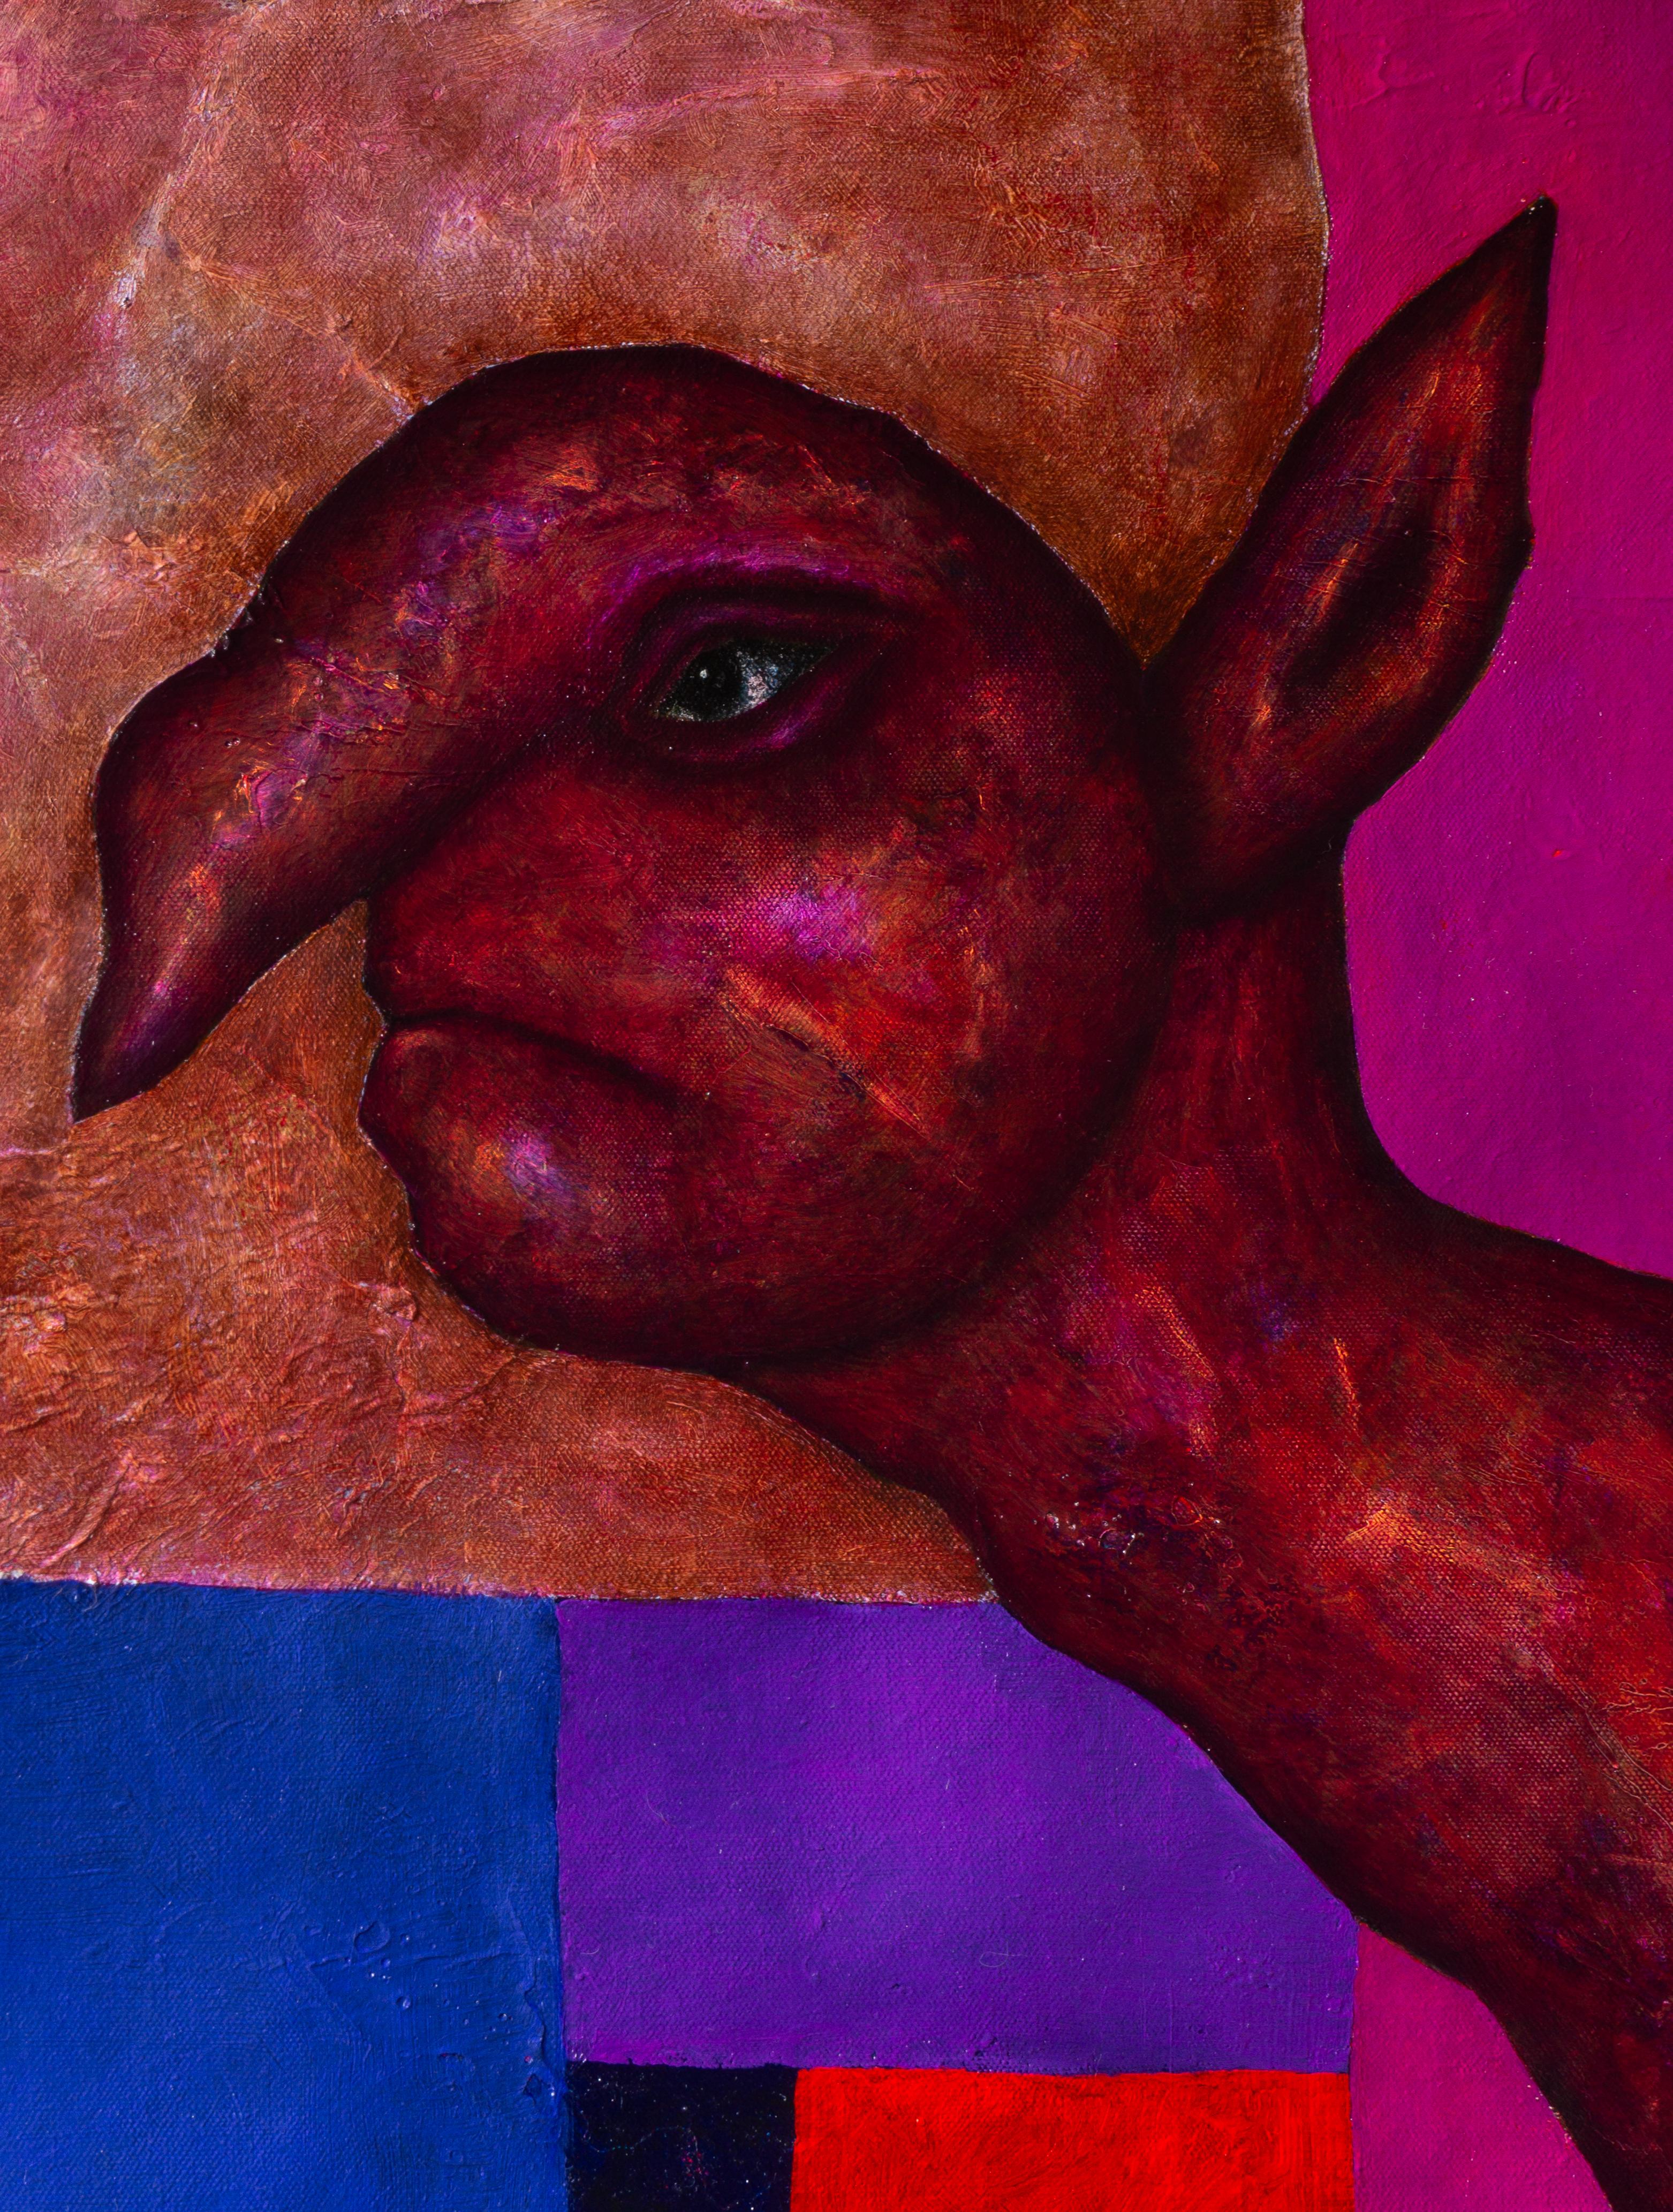 Peinture magique « Study for magenta spirit » texturée et mélangée en rose - Painting de Luis Alexander Rodríguez (Ie-Xiua)